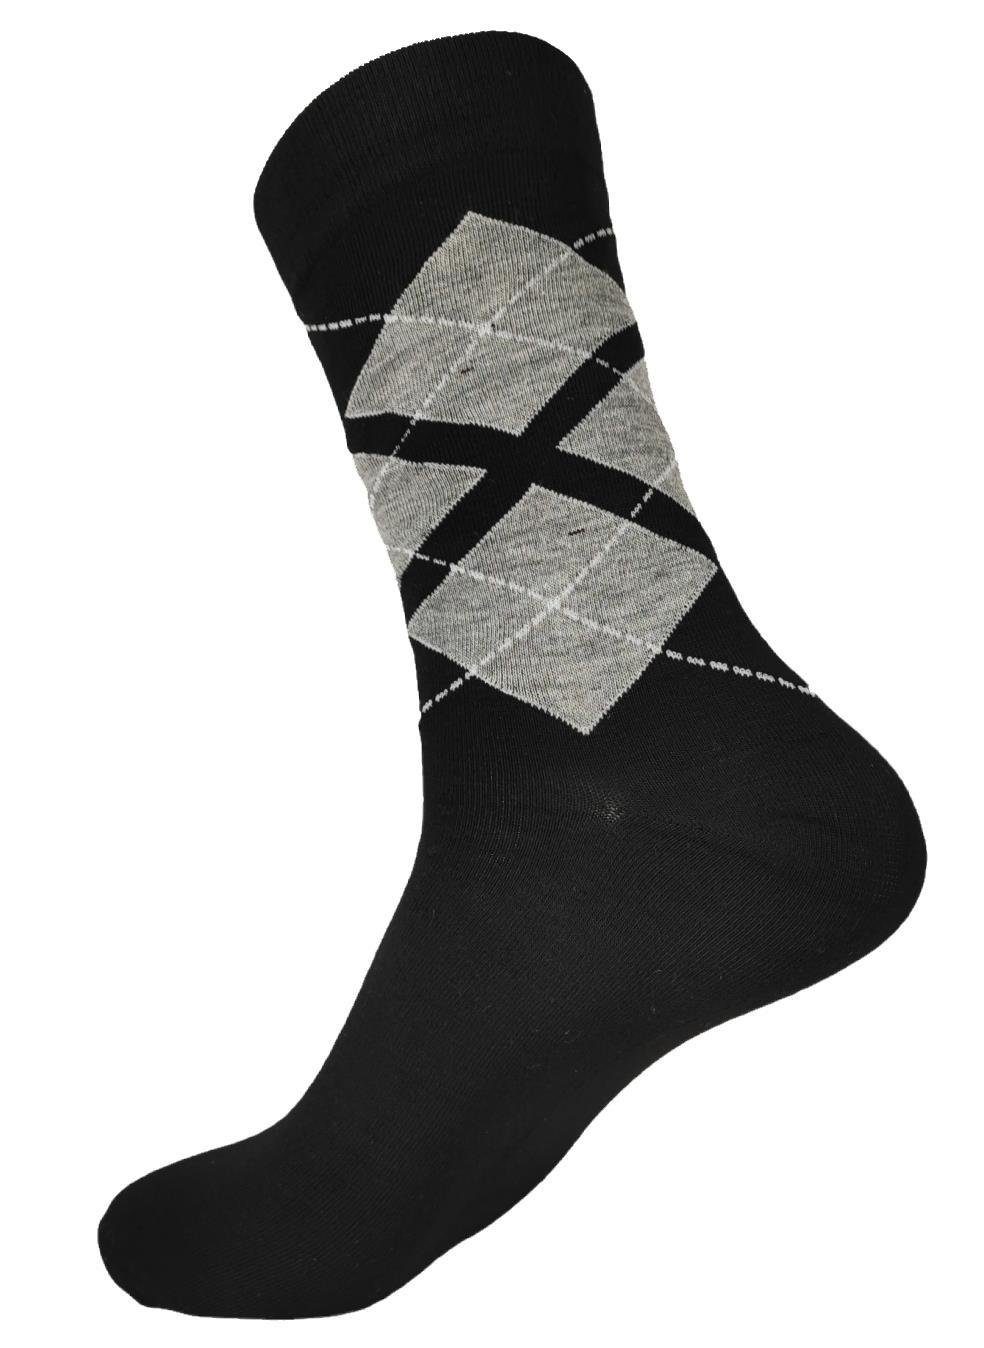 Form Freizeit Muster Basicsocken 12 klassischer Paar, Paar 12 Herren Sport Mix6 (12-Paar) EloModa Socken